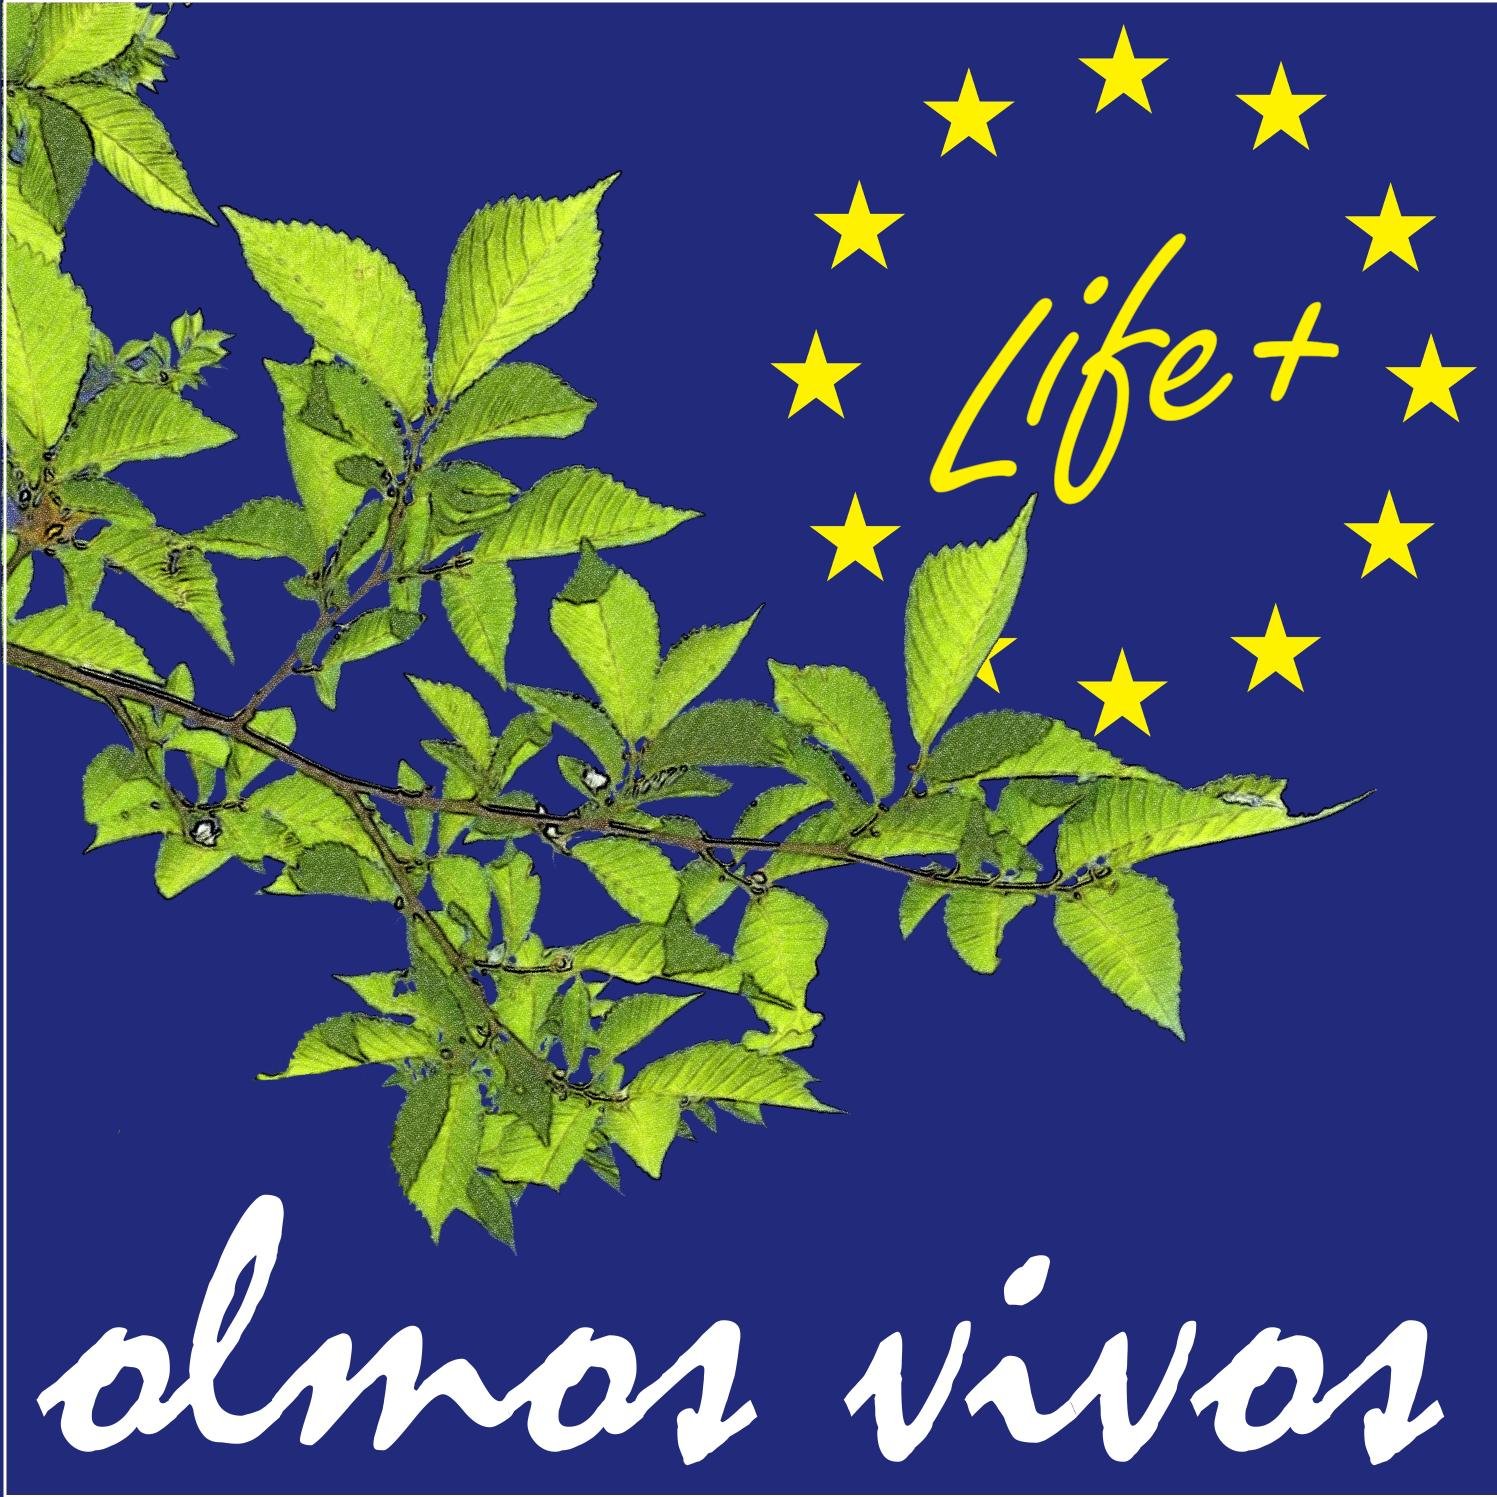 Intentando recuperar los olmos autóctonos. 
Proyecto LIFE 13 BIO/ES/00556 “Restauración de olmos ibéricos (Ulmus minor y U.laevis) en la cuenca alta del Tajo”